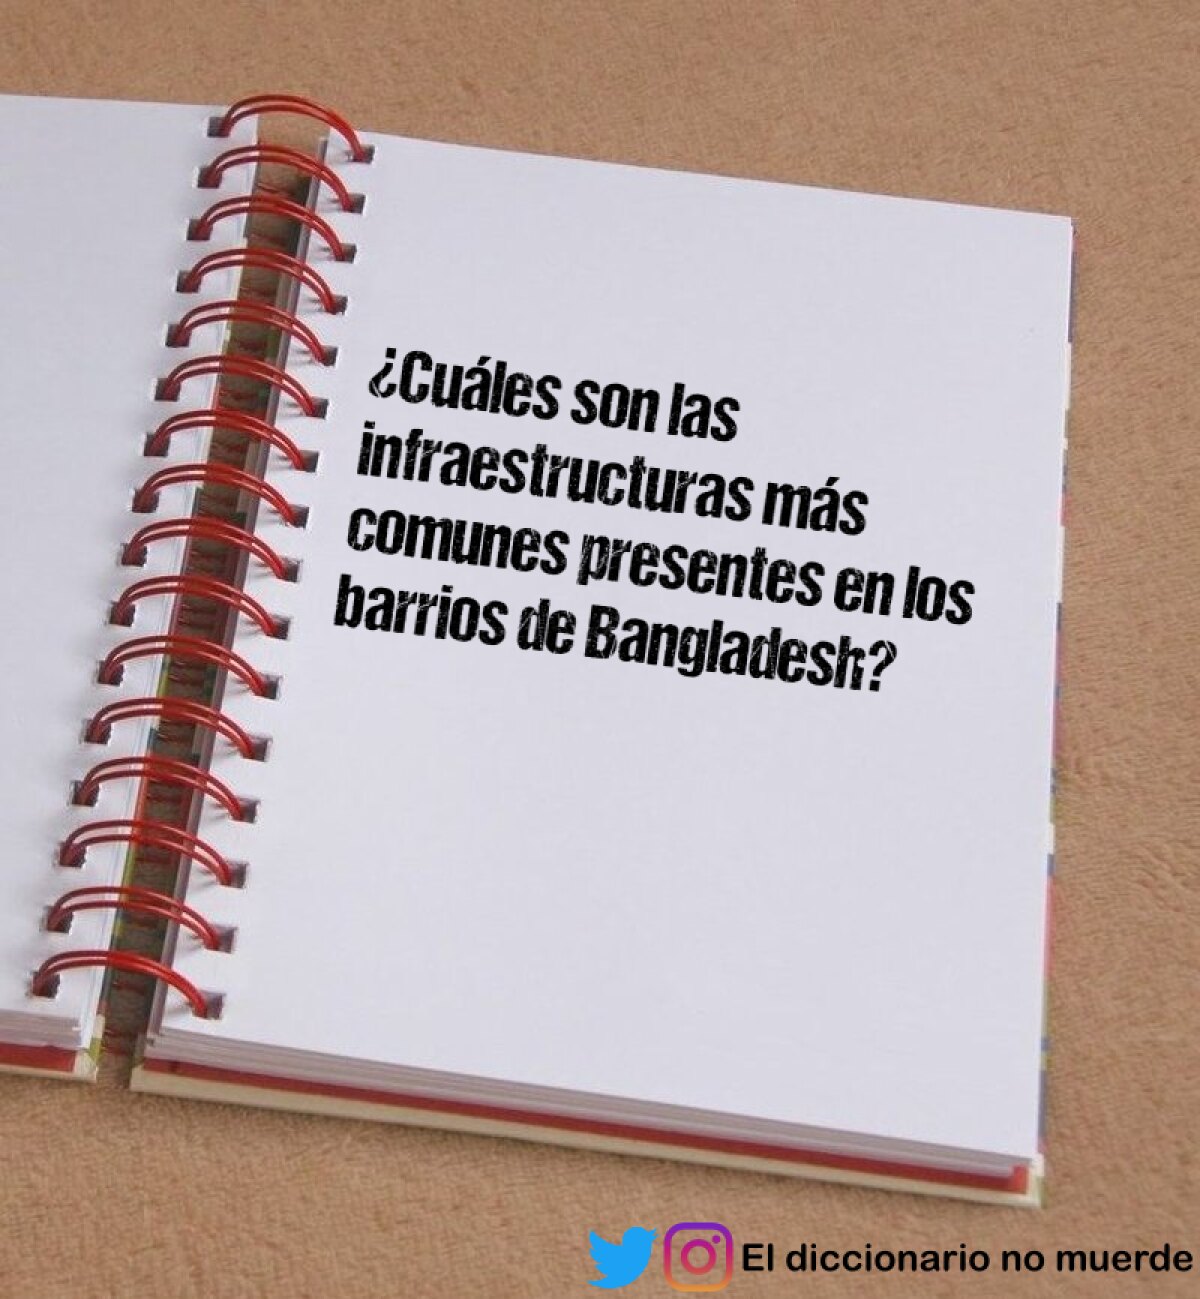 ¿Cuáles son las infraestructuras más comunes presentes en los barrios de Bangladesh?